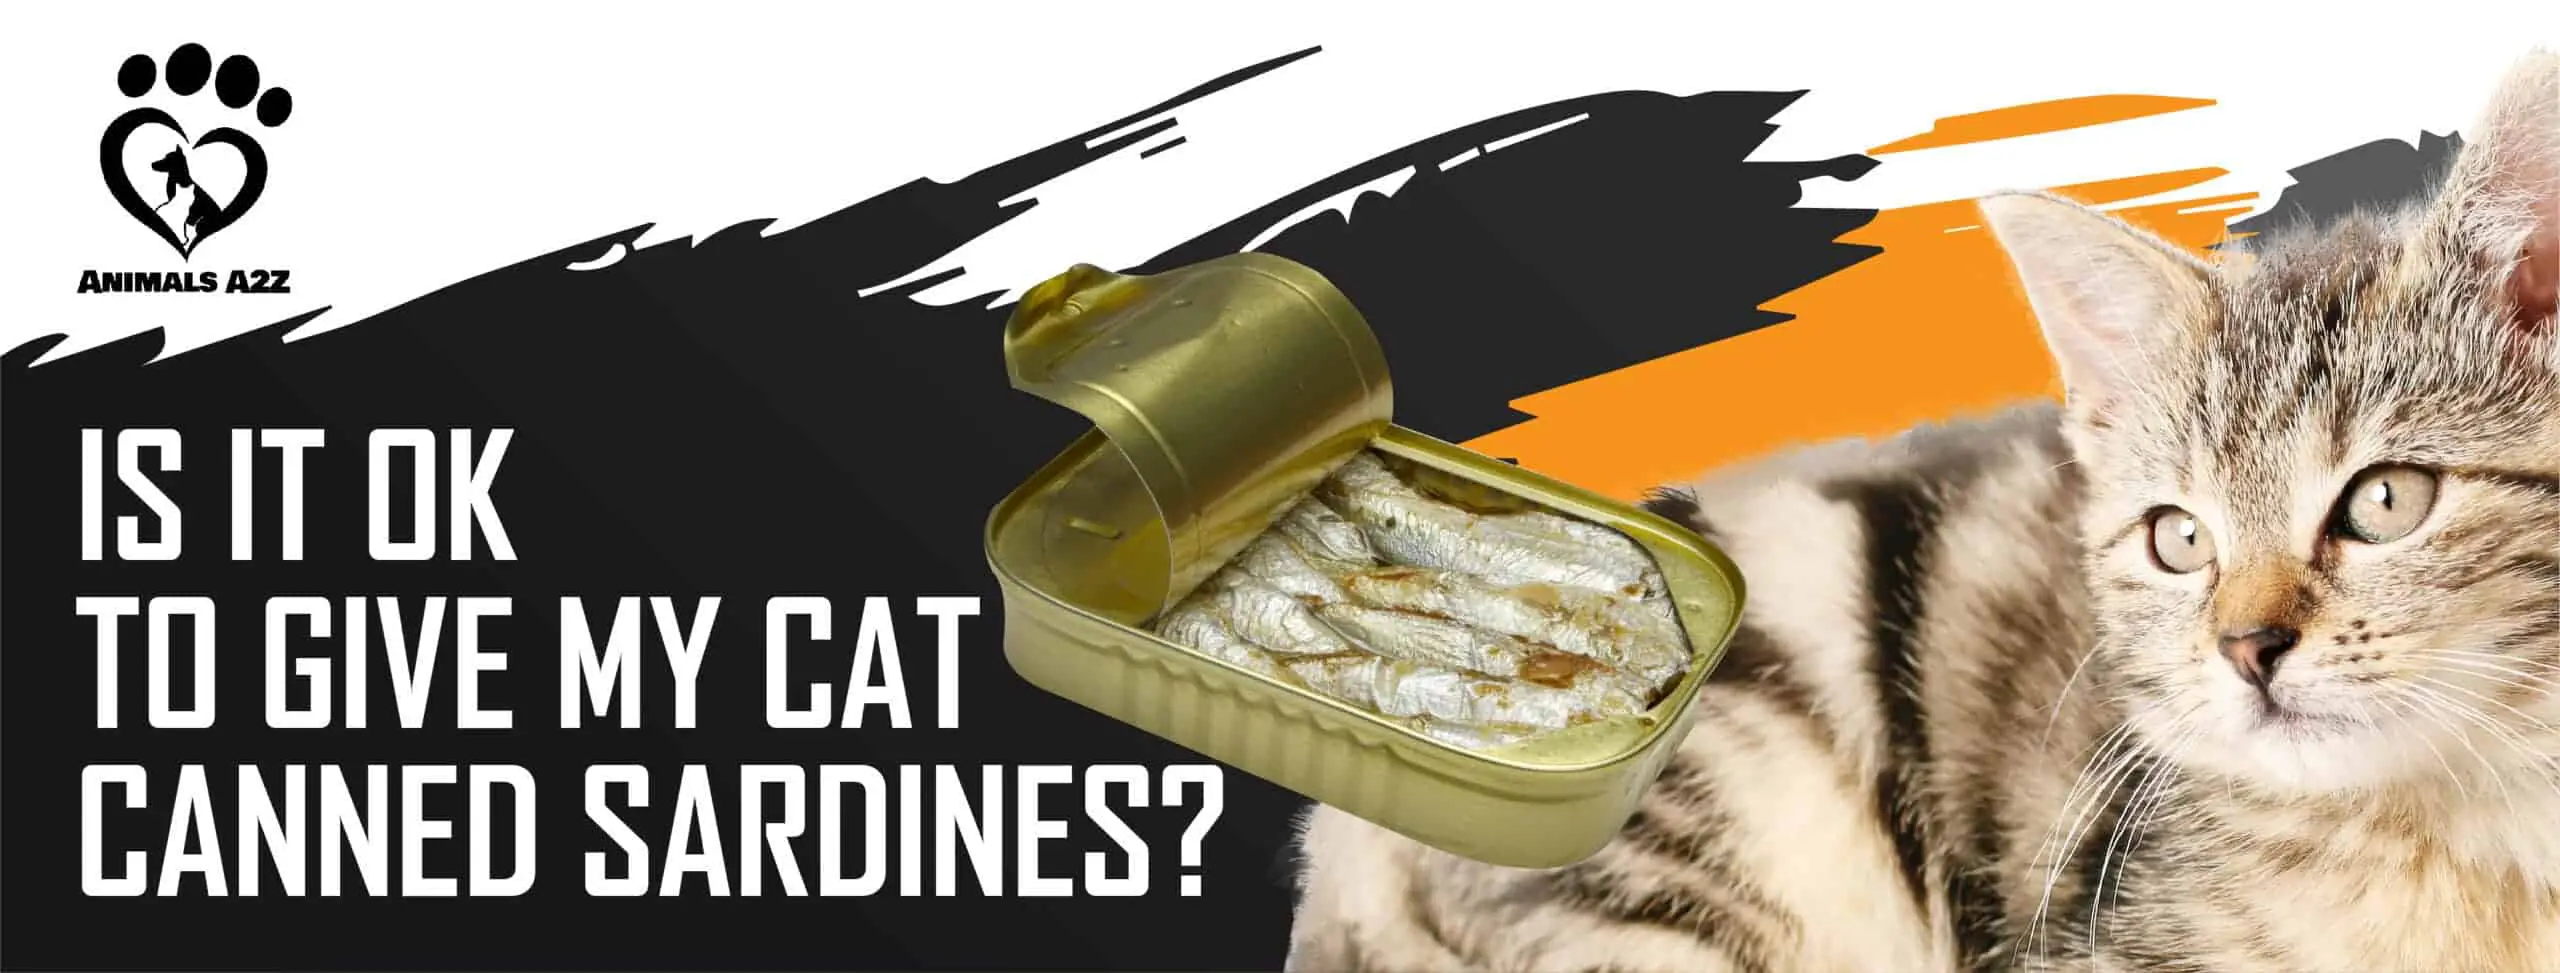 Er det i orden at give min kat sardiner på dåse